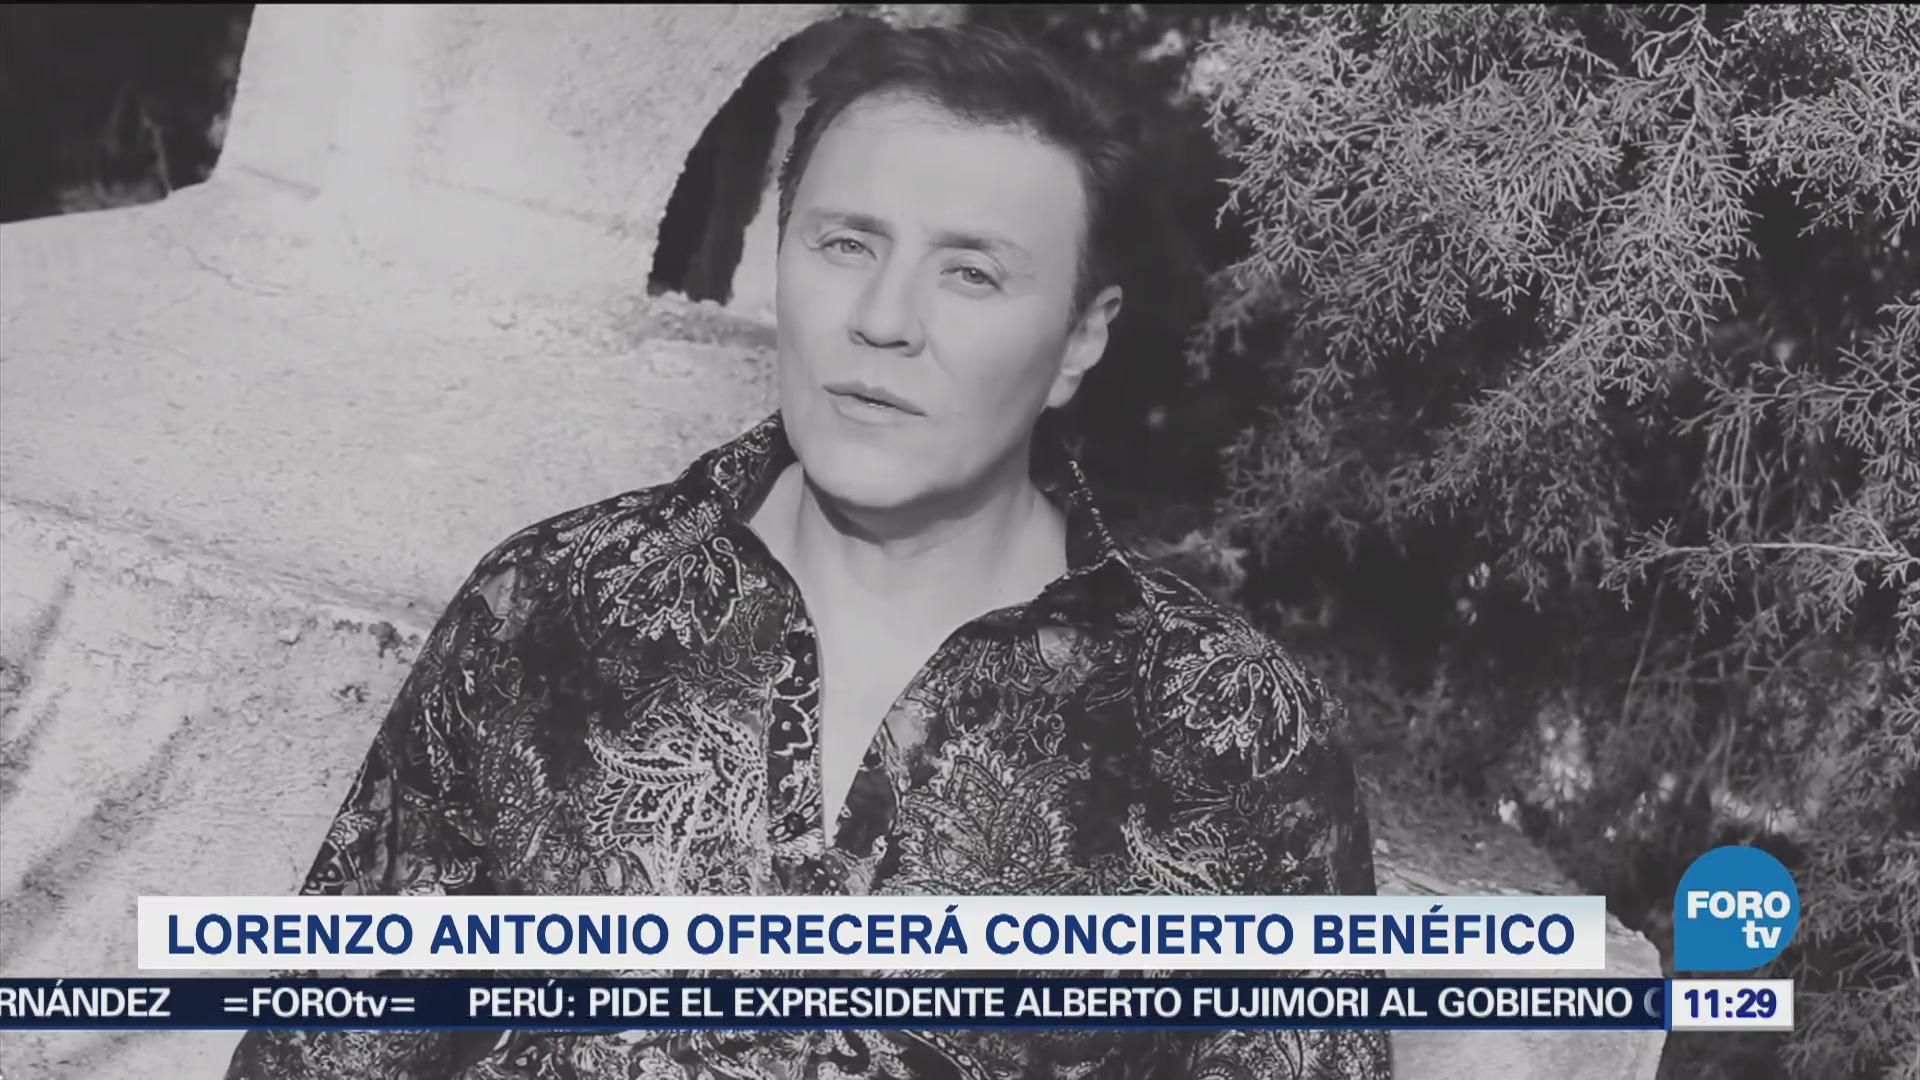 Lorenzo Antonio ofrecerá concierto benéfico